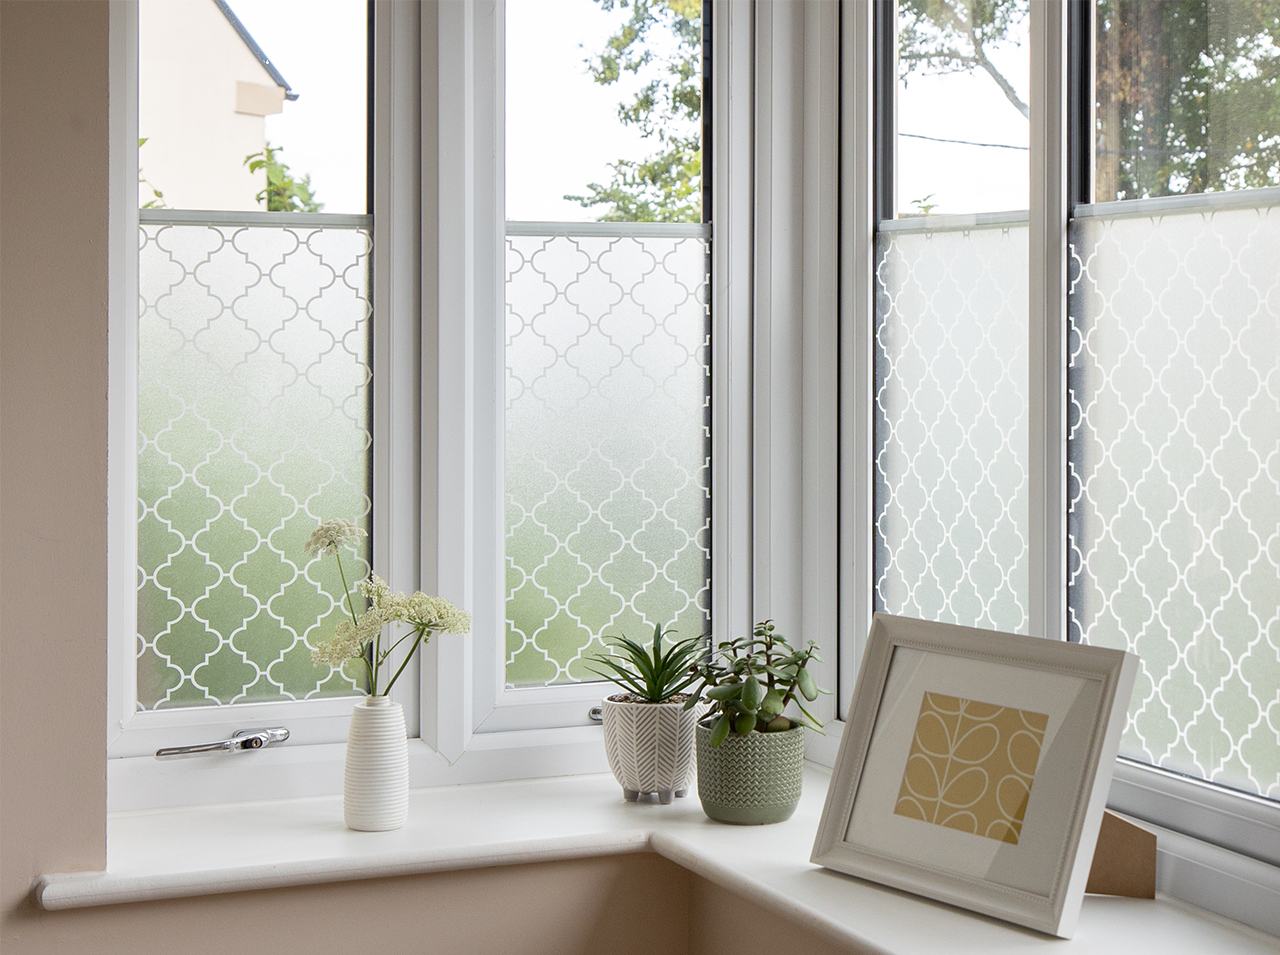 Fenster beklebt mit milchiger blickdichter Fensterfolie mit orientalischem Konturen-Muster in Weiß